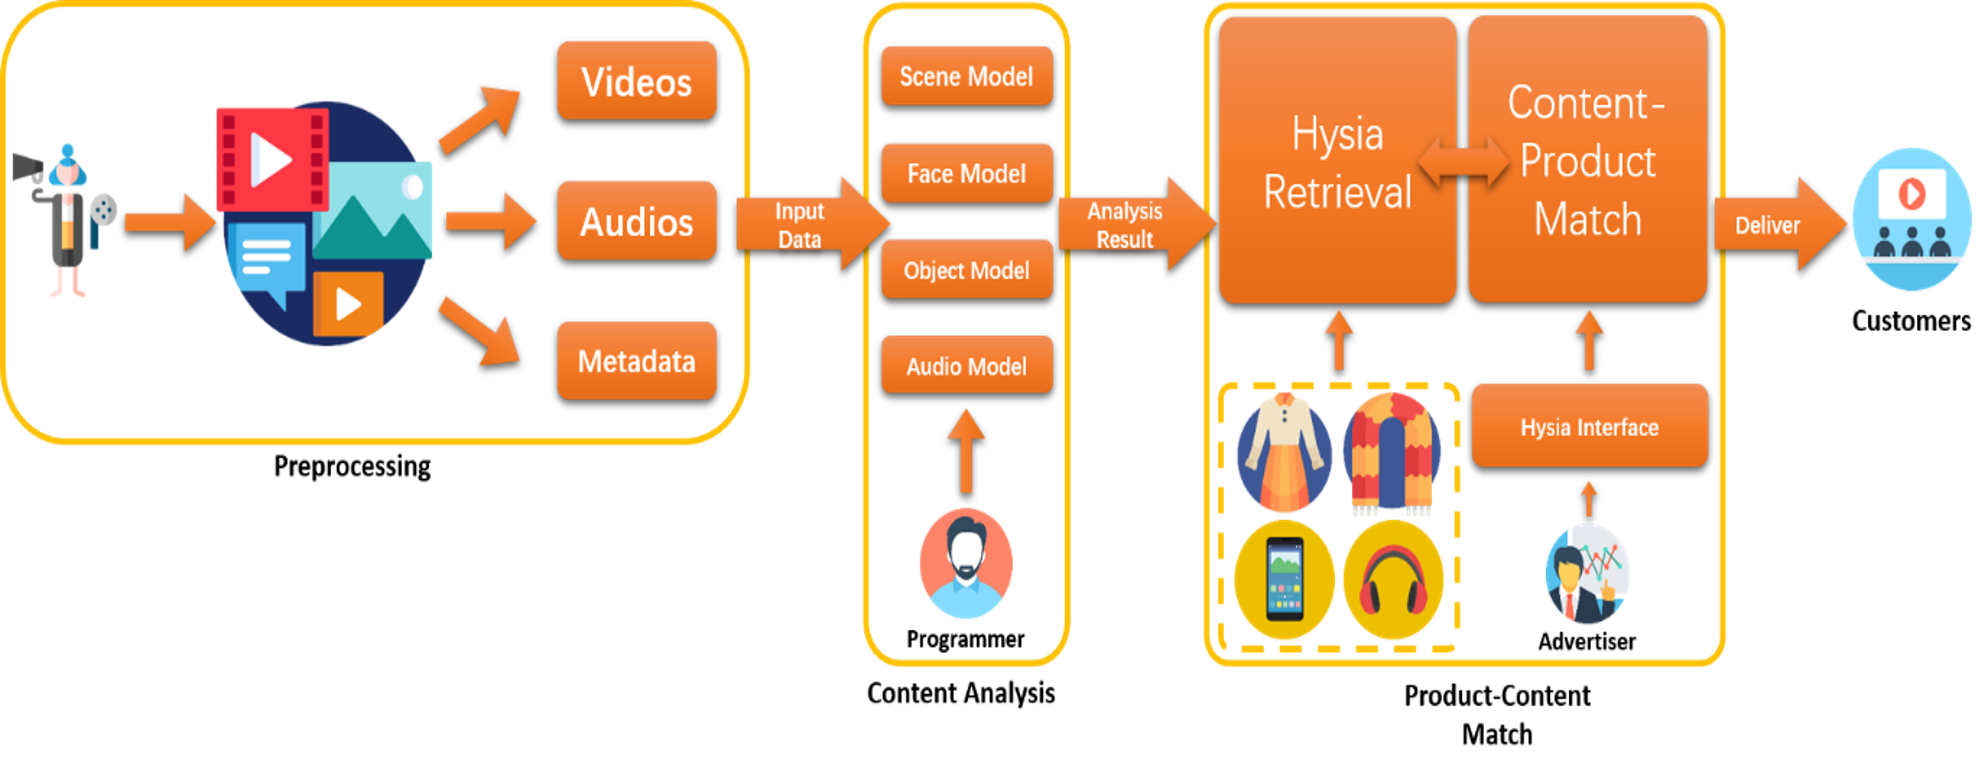 hysia-block-diagram